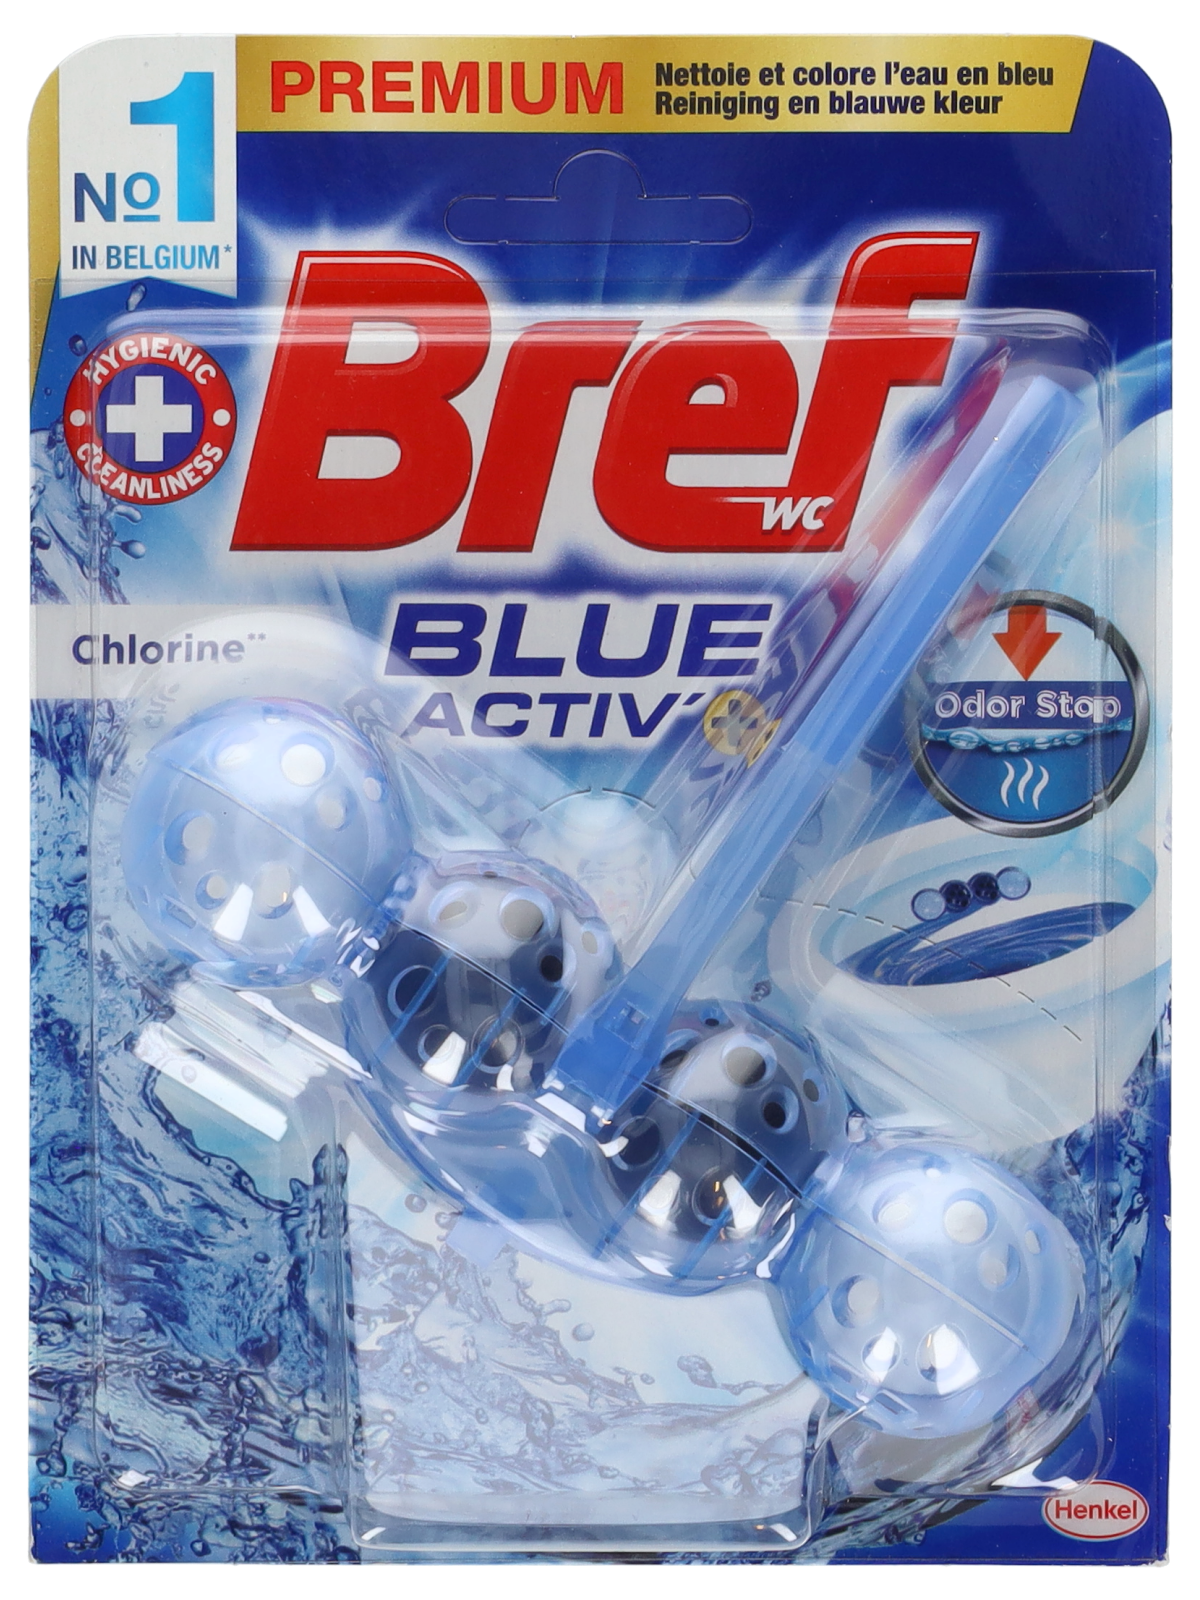 Bloc WC Bref blue activ - Wibra Belgique - Vous faites ça bien.